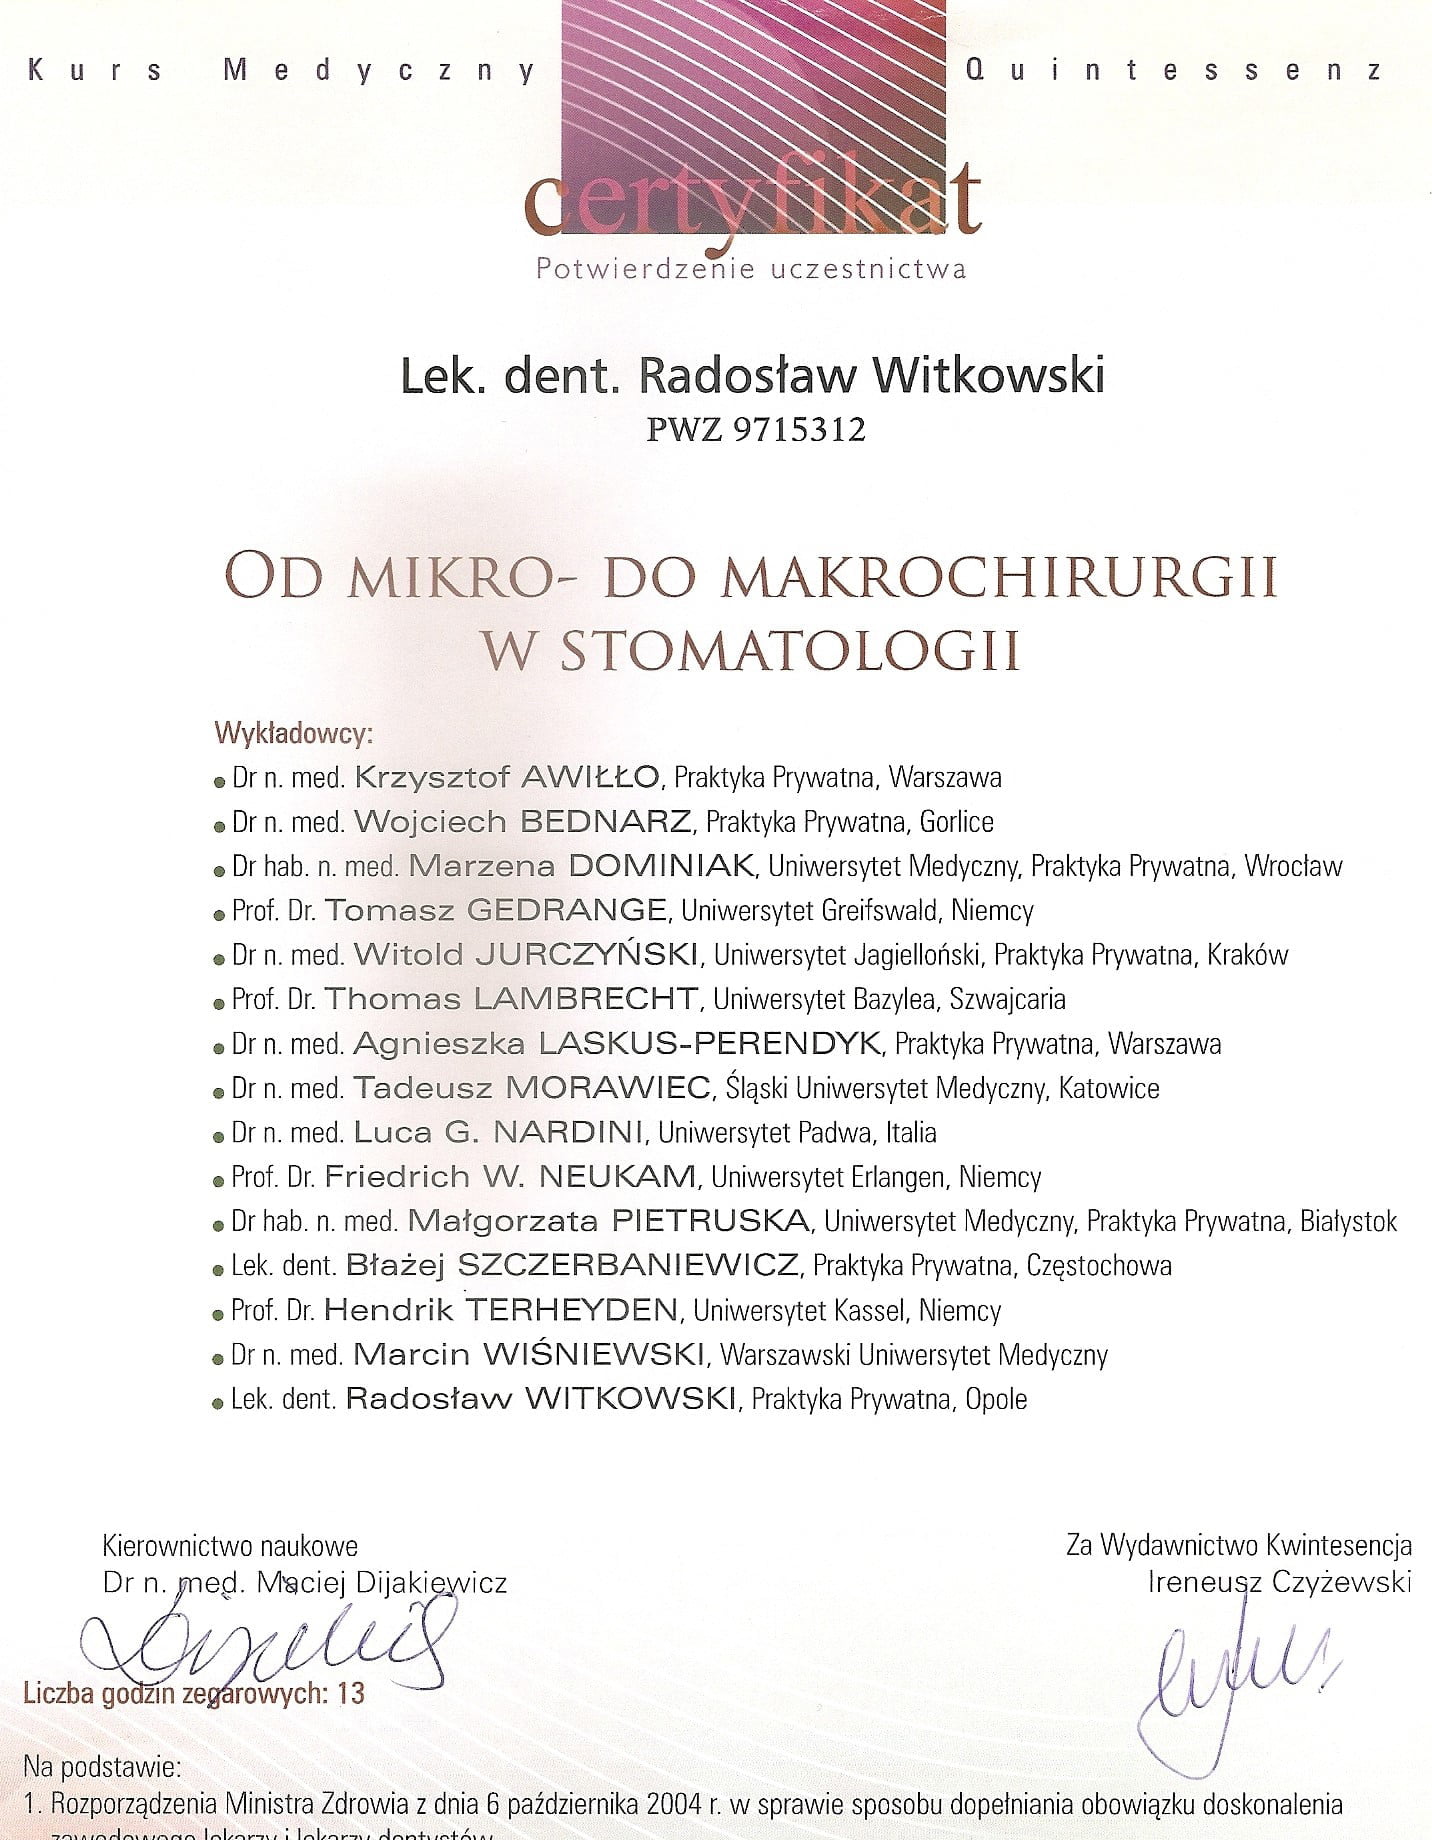 Radosław Witkowski certyfikat 39